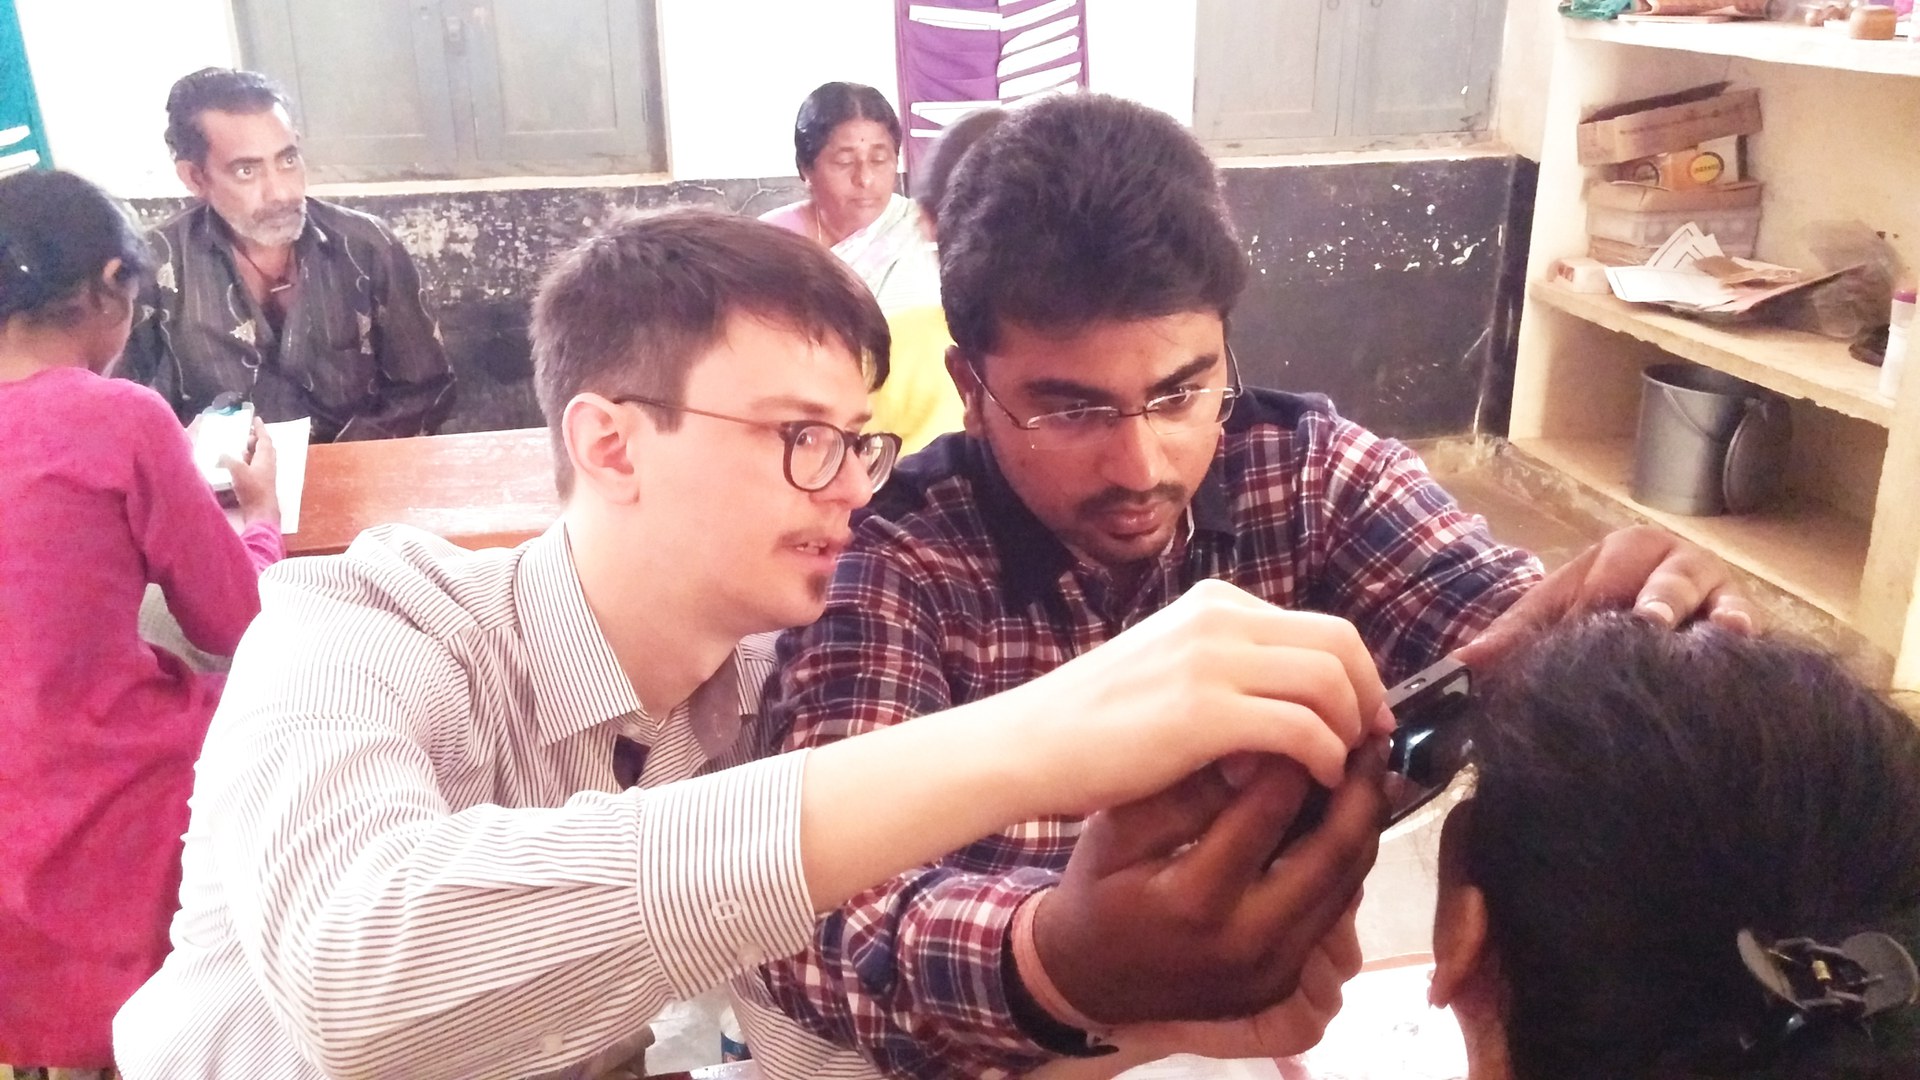 Augen-Screening mit umgerüsteten Smartphones in Indien: